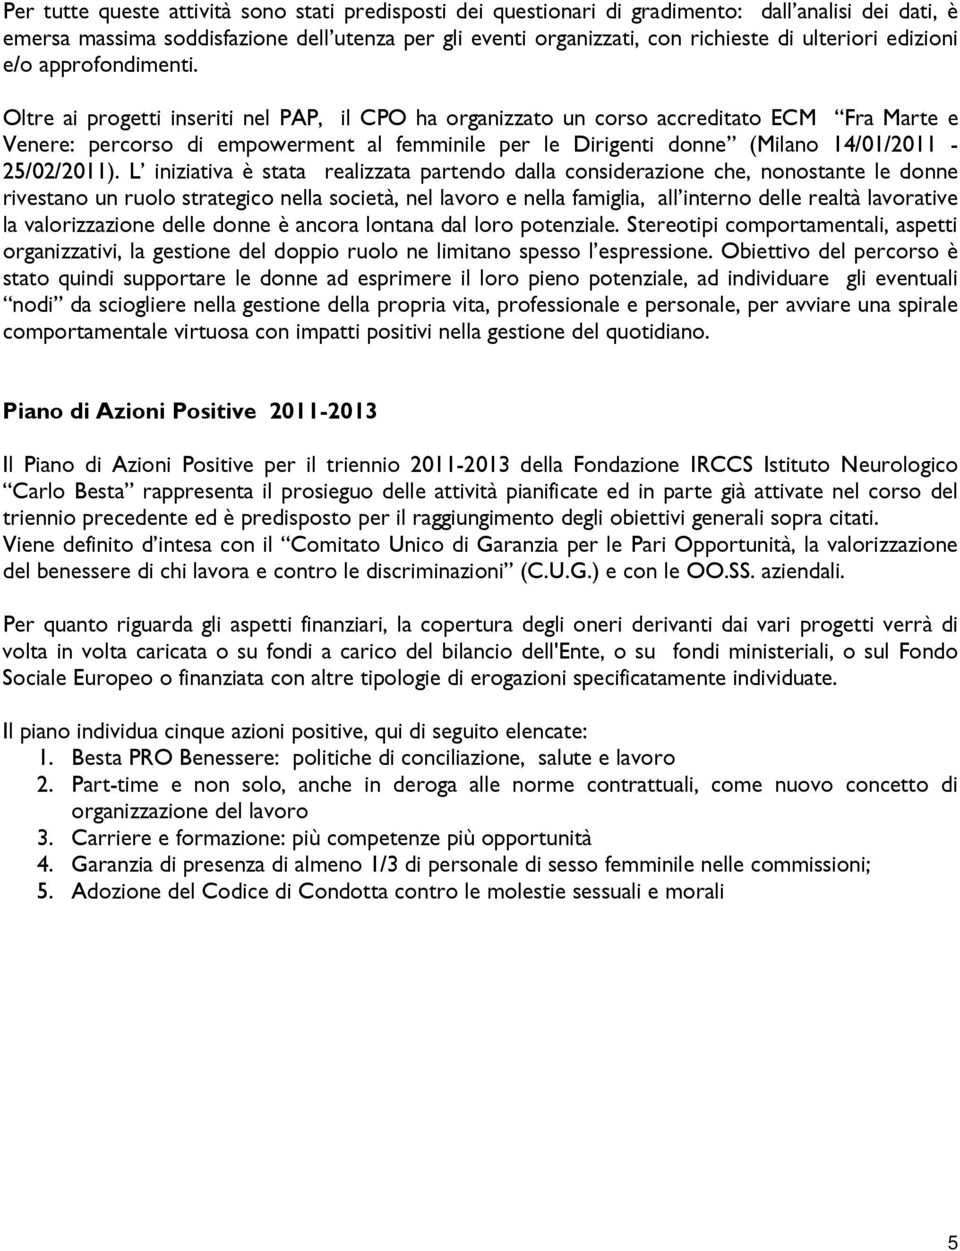 Oltre ai progetti inseriti nel PAP, il CPO ha organizzato un corso accreditato ECM Fra Marte e Venere: percorso di empowerment al femminile per le Dirigenti donne (Milano 14/01/2011-25/02/2011).